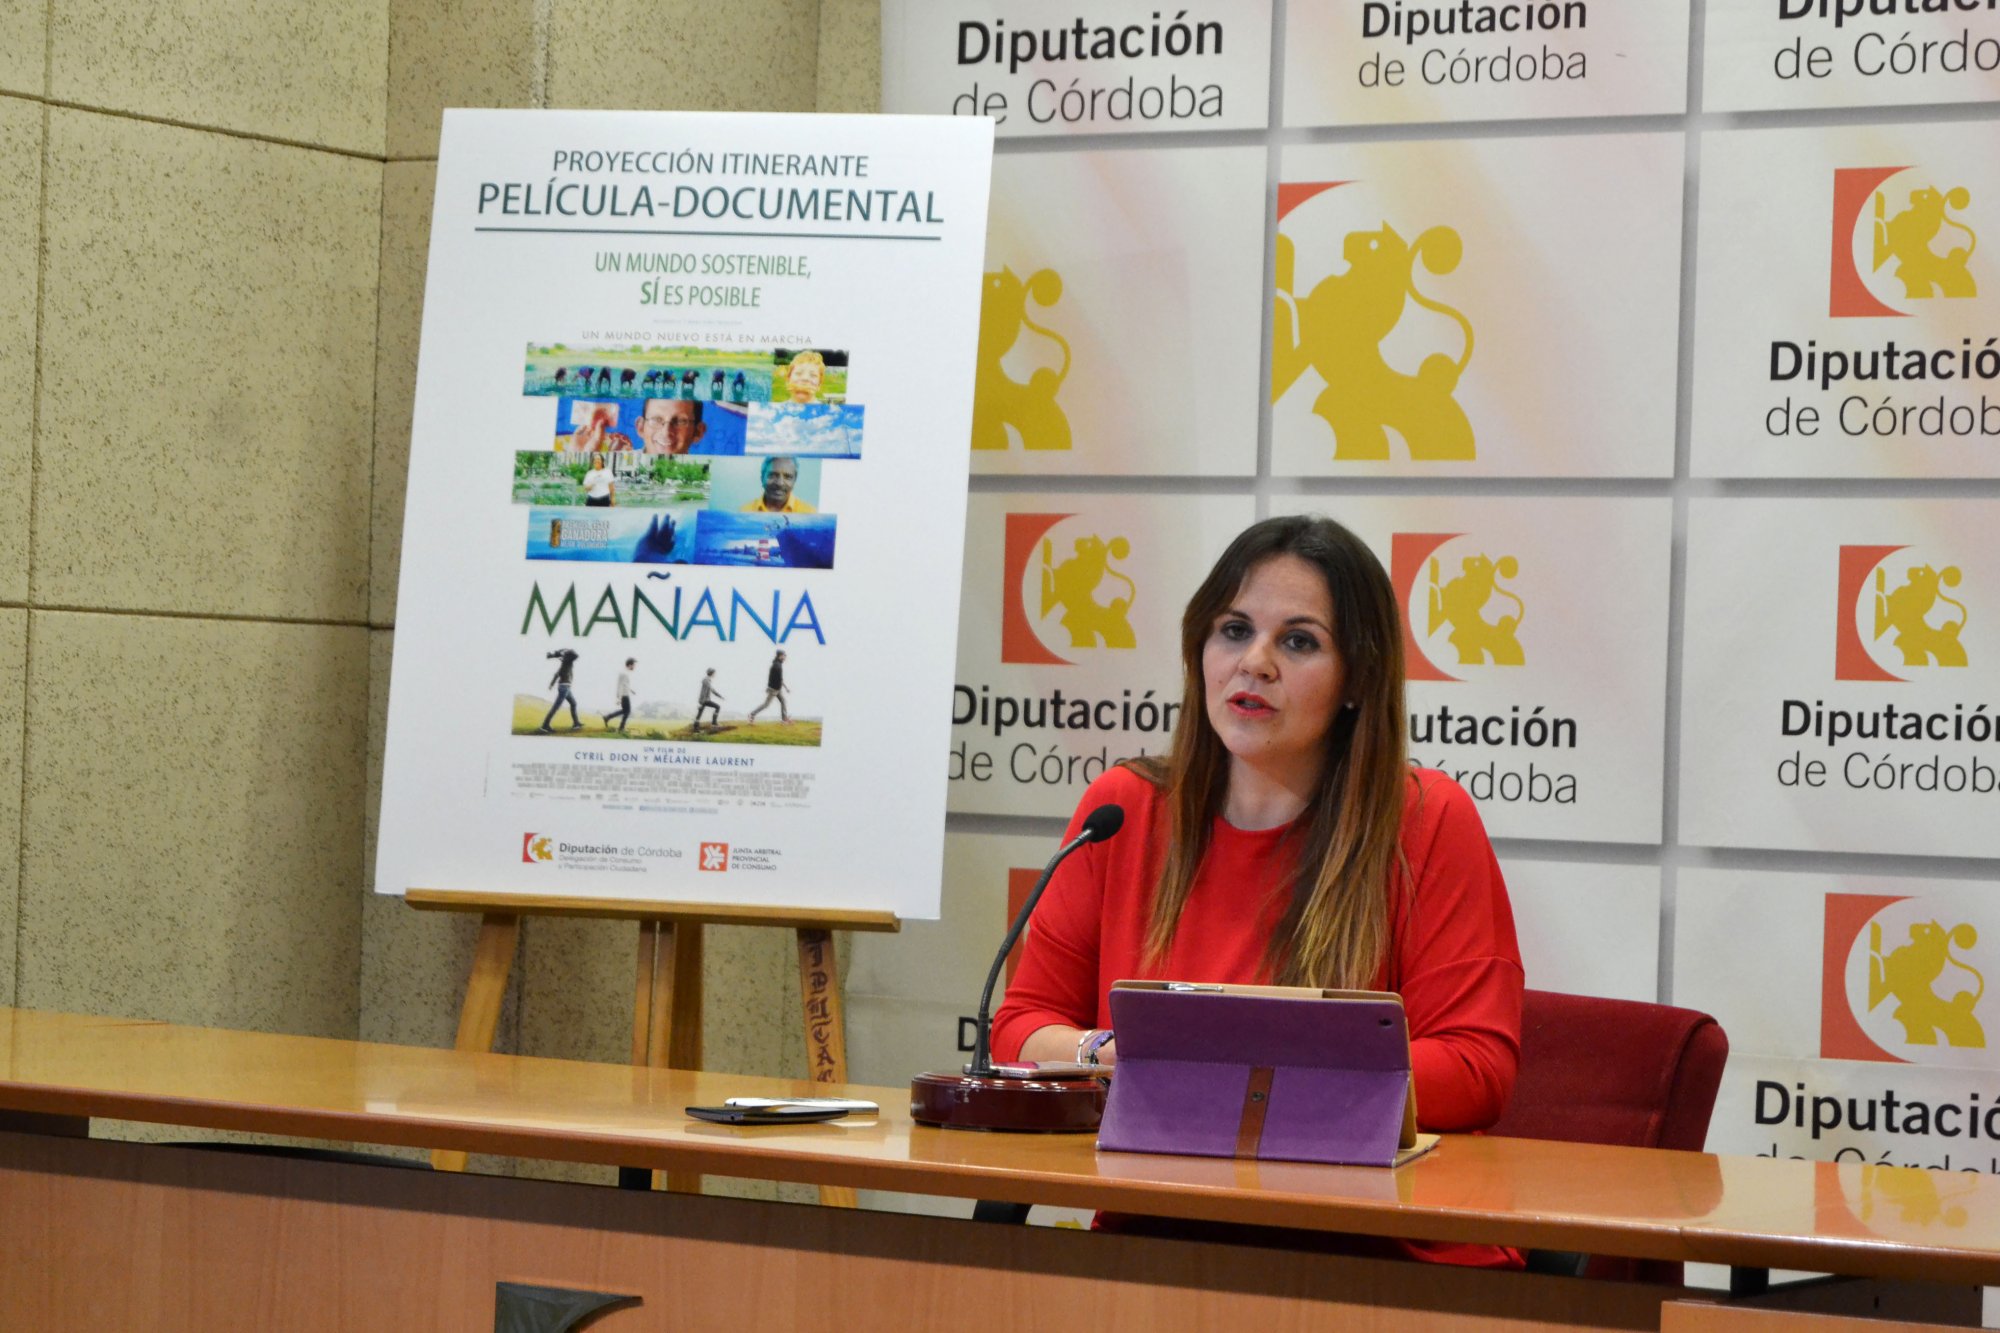 La Diputación de Córdoba proyectará el documental ‘Mañana’ los días 15 y 16 de marzo con motivo del Día del Consumidor.